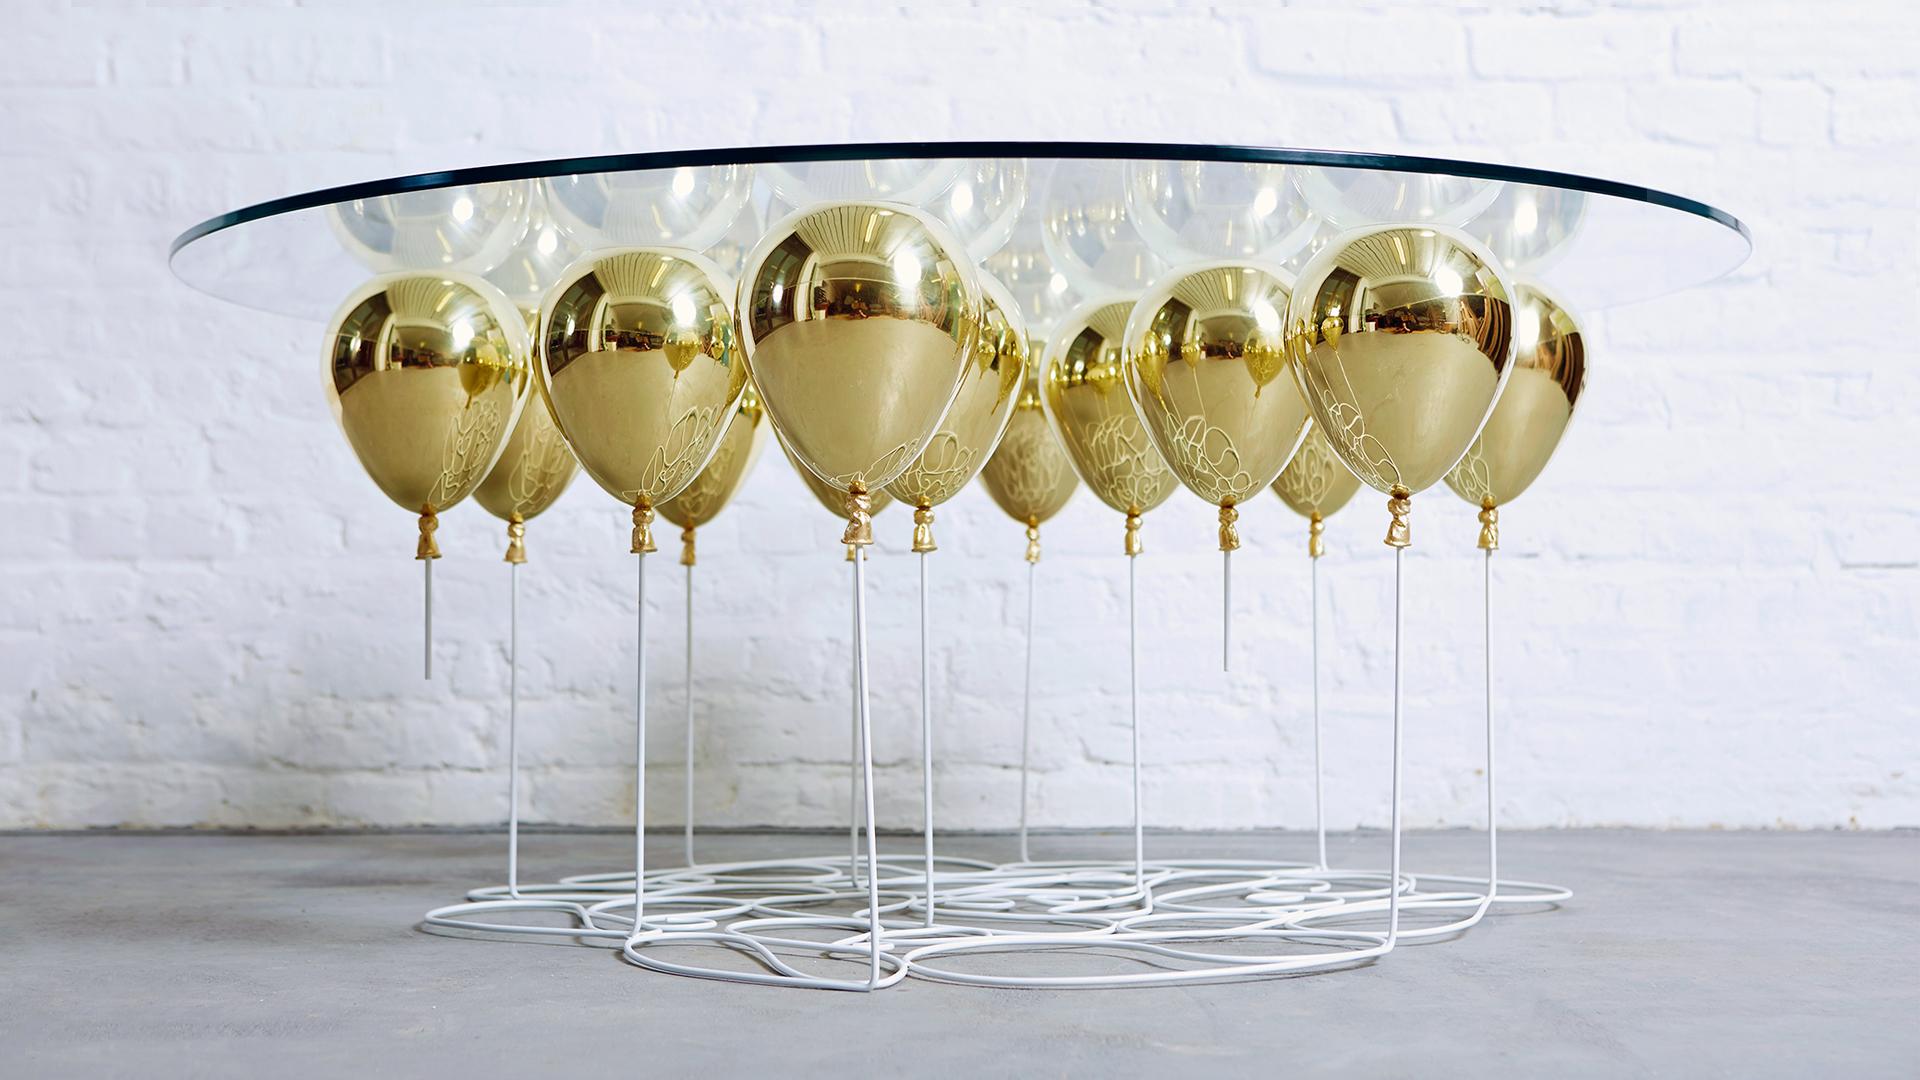 Der UP Ballon Couchtisch ist ein verspieltes Trompe L'Oeil Möbelstück. Eine Reihe schimmernder, polierter Metallballons erweckt die Illusion einer schwebenden Glastischplatte.

Ein faszinierendes Möbelstück, das mit den Konzepten des Schwebens und